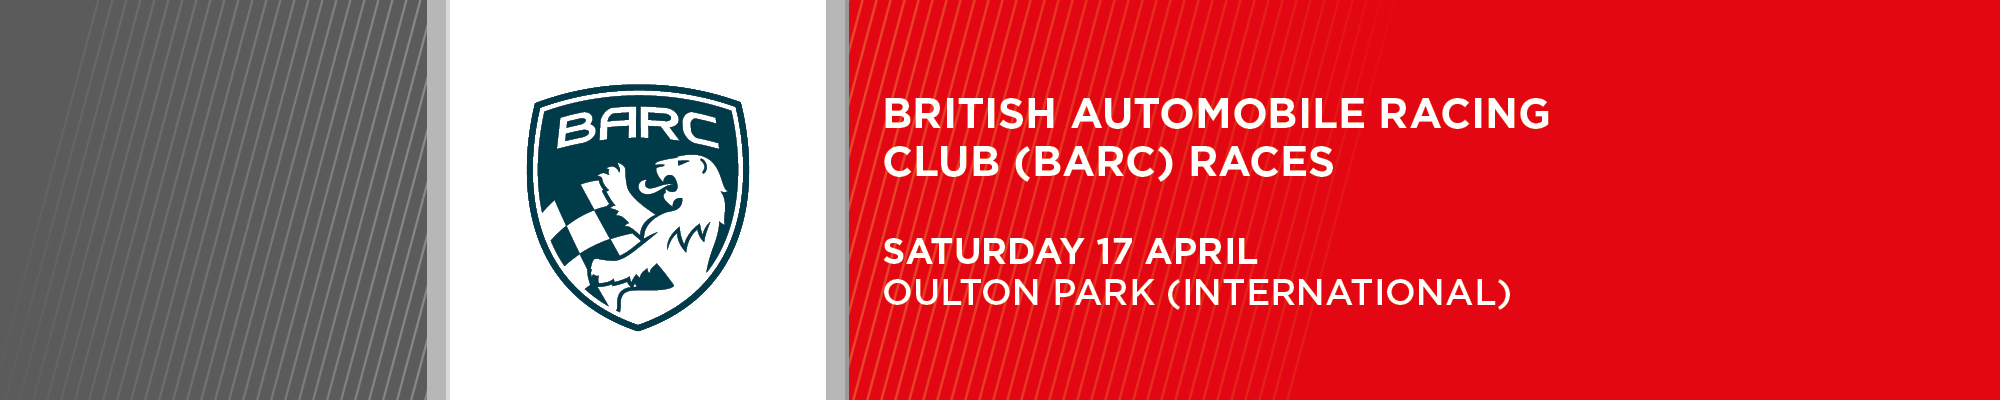 BARC Club Car Championships- NO SPECTATORS